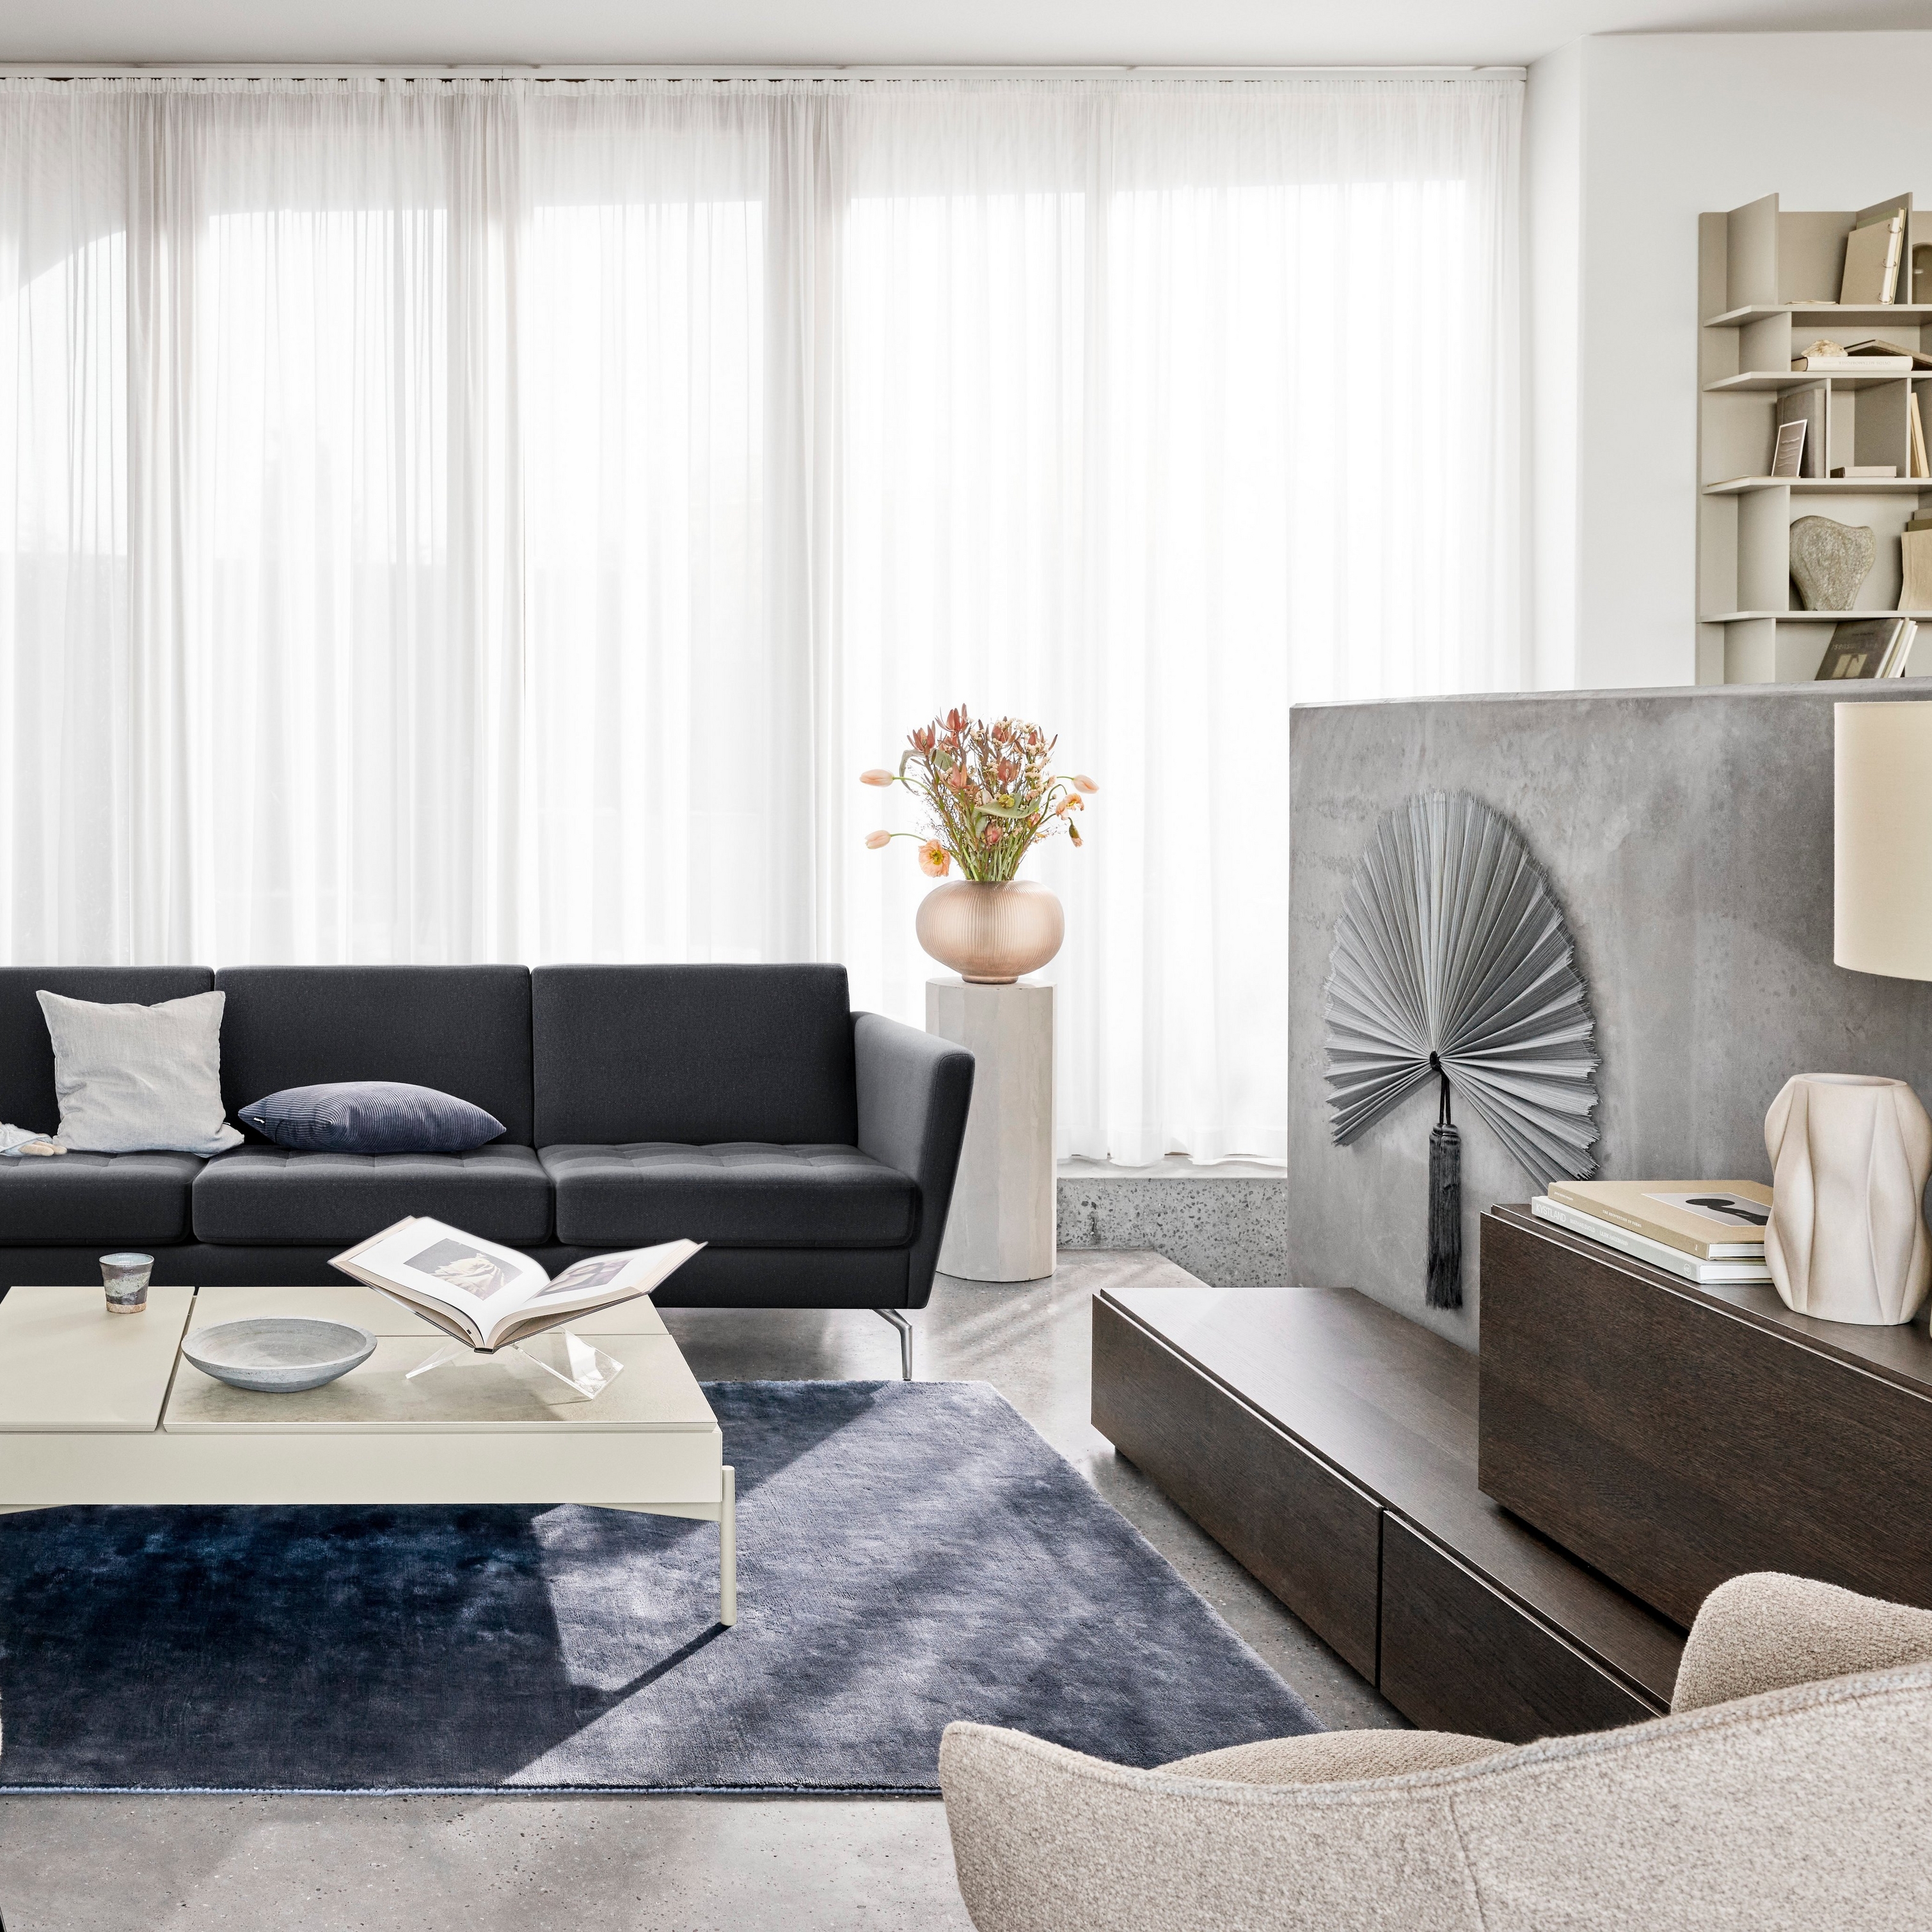 Moderni olohuone, jossa on musta sohva, tuolit, läpikuultavat verhot ja koriste-esineitä.